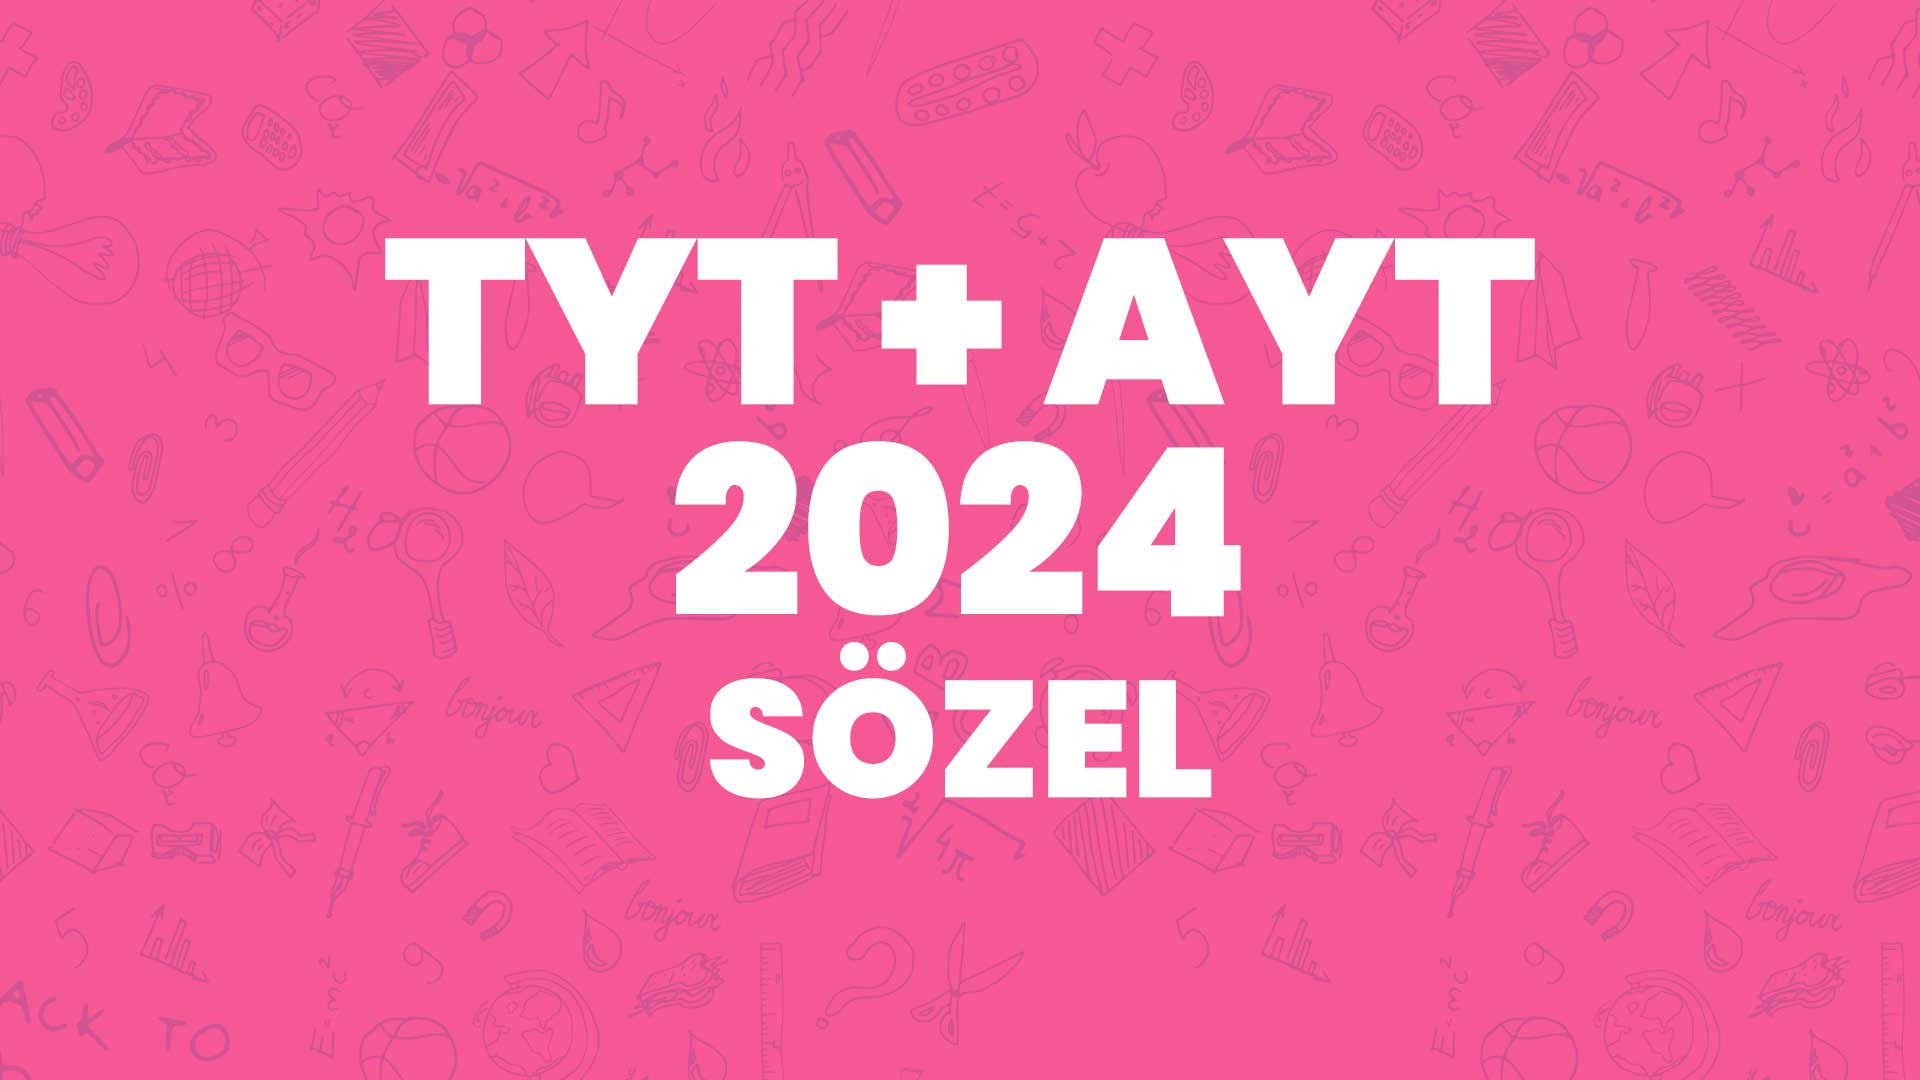 TYT + AYT 2024 Sözel